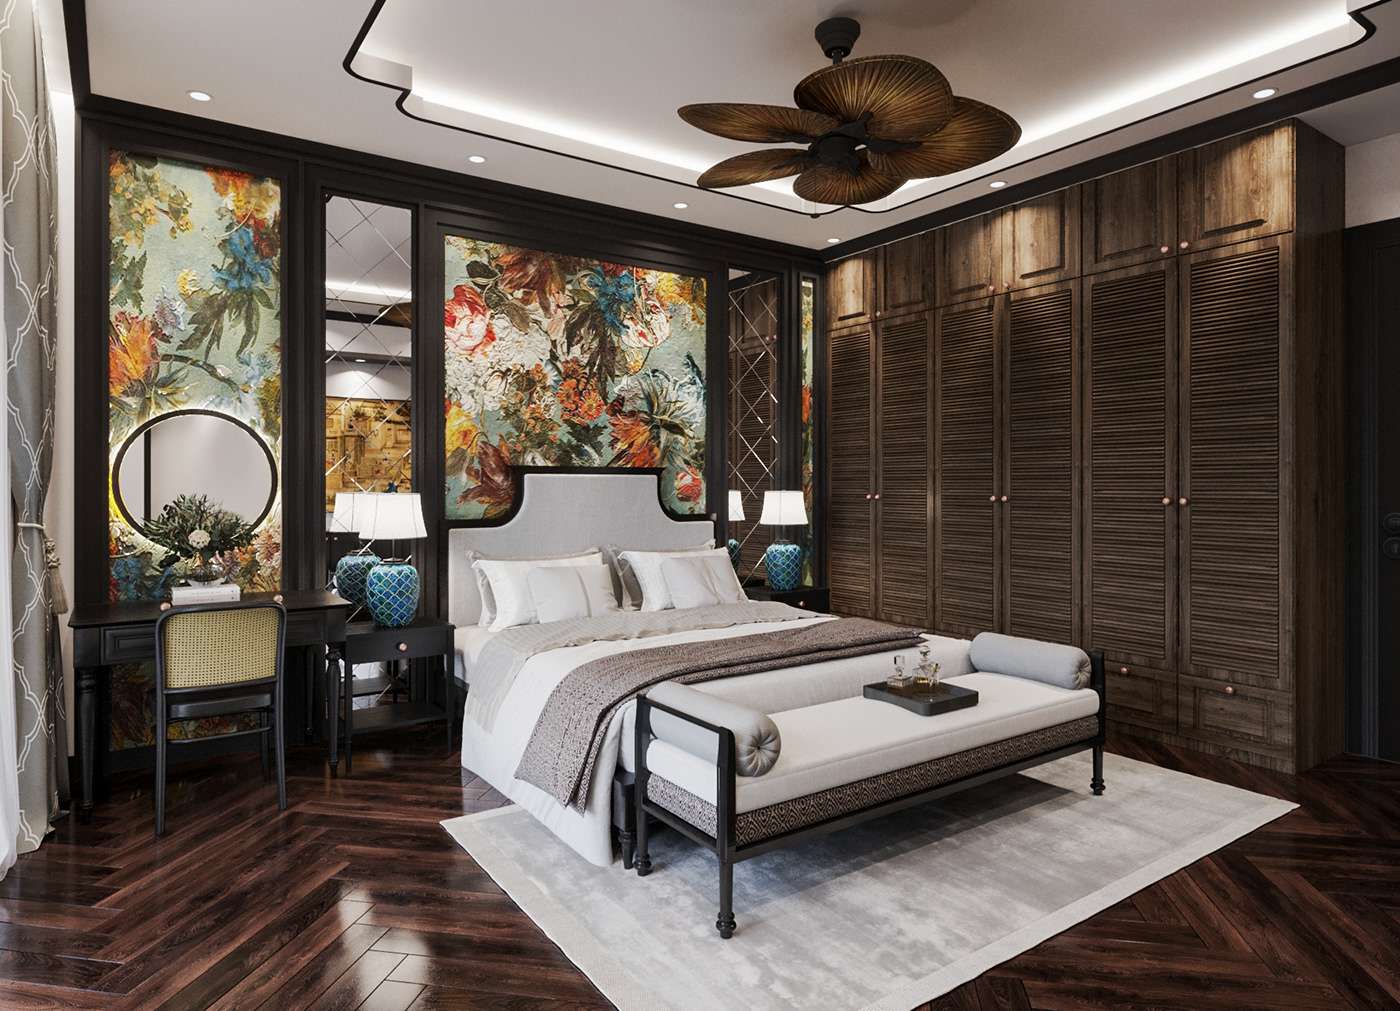 Phòng ngủ phong cách Đông Dương sang trọng mà vẫn lưu trữ đậm ấn tượng truyền thống